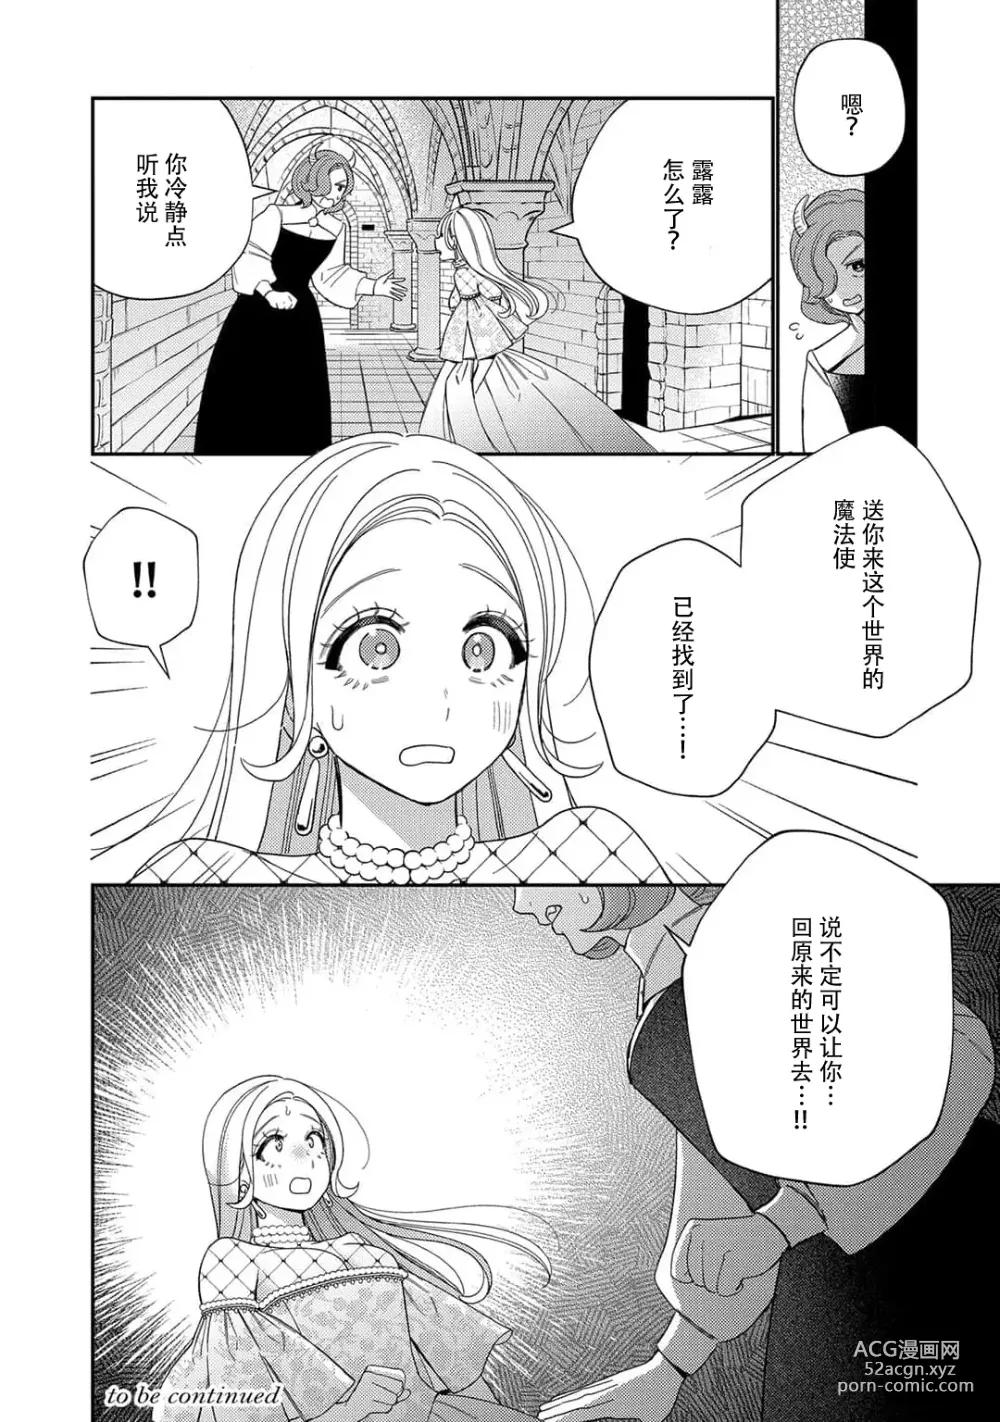 Page 212 of manga 转生成为恶役大小姐，迎接不H就会死的命运~与敌国国王的笼络联姻~ 1-5